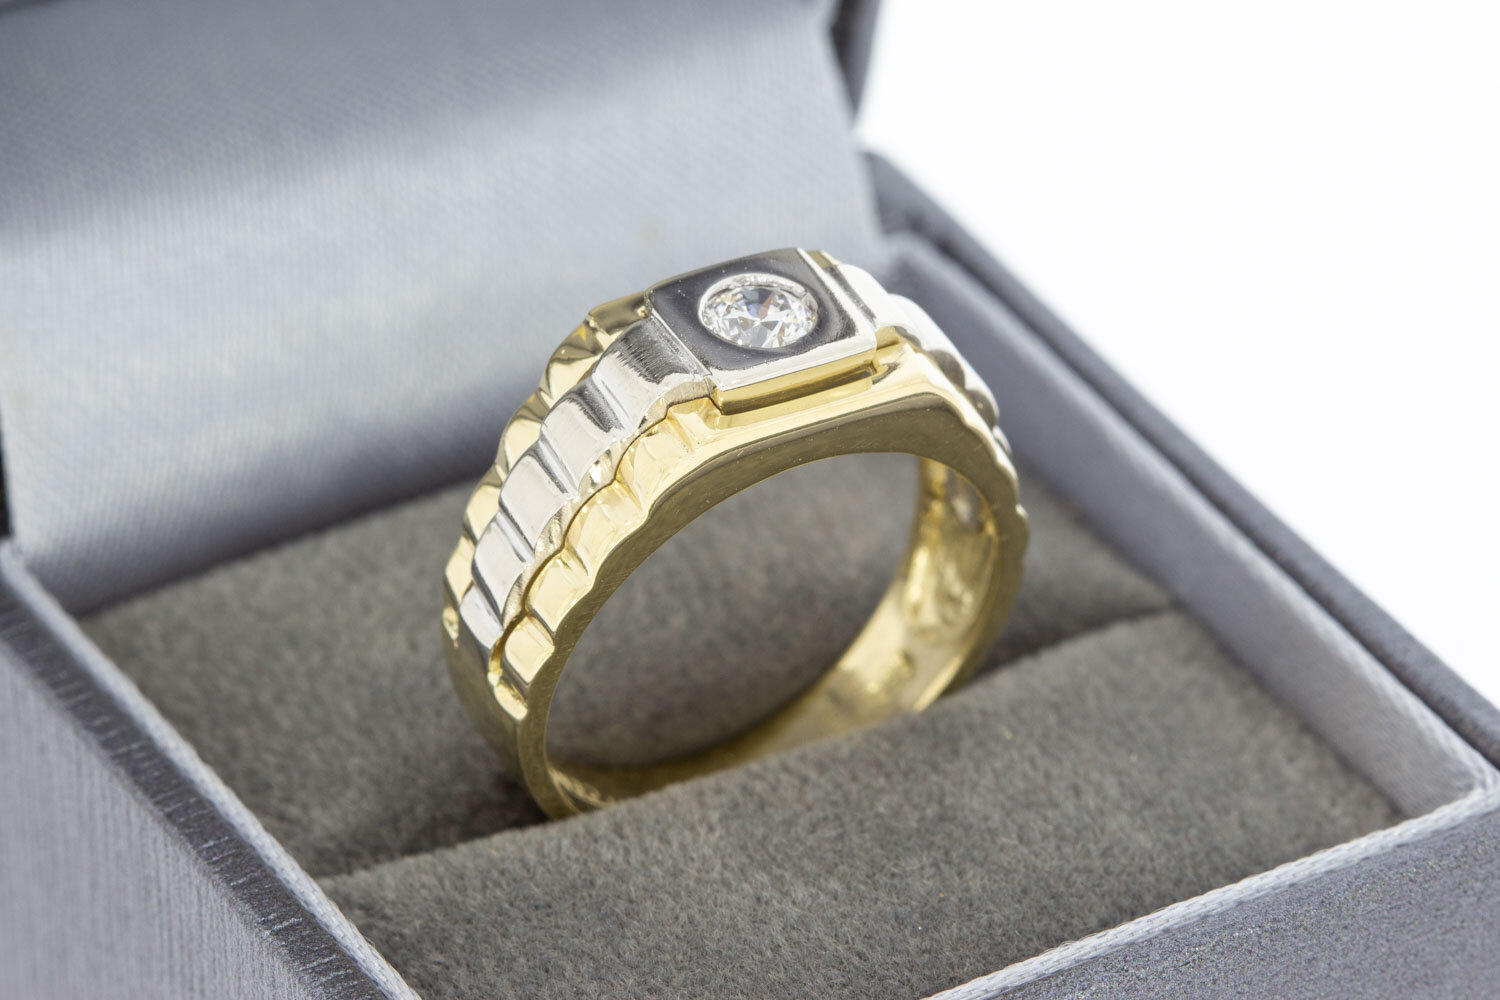 14 Karaat gouden Rolex style saffier ring - 19 mm